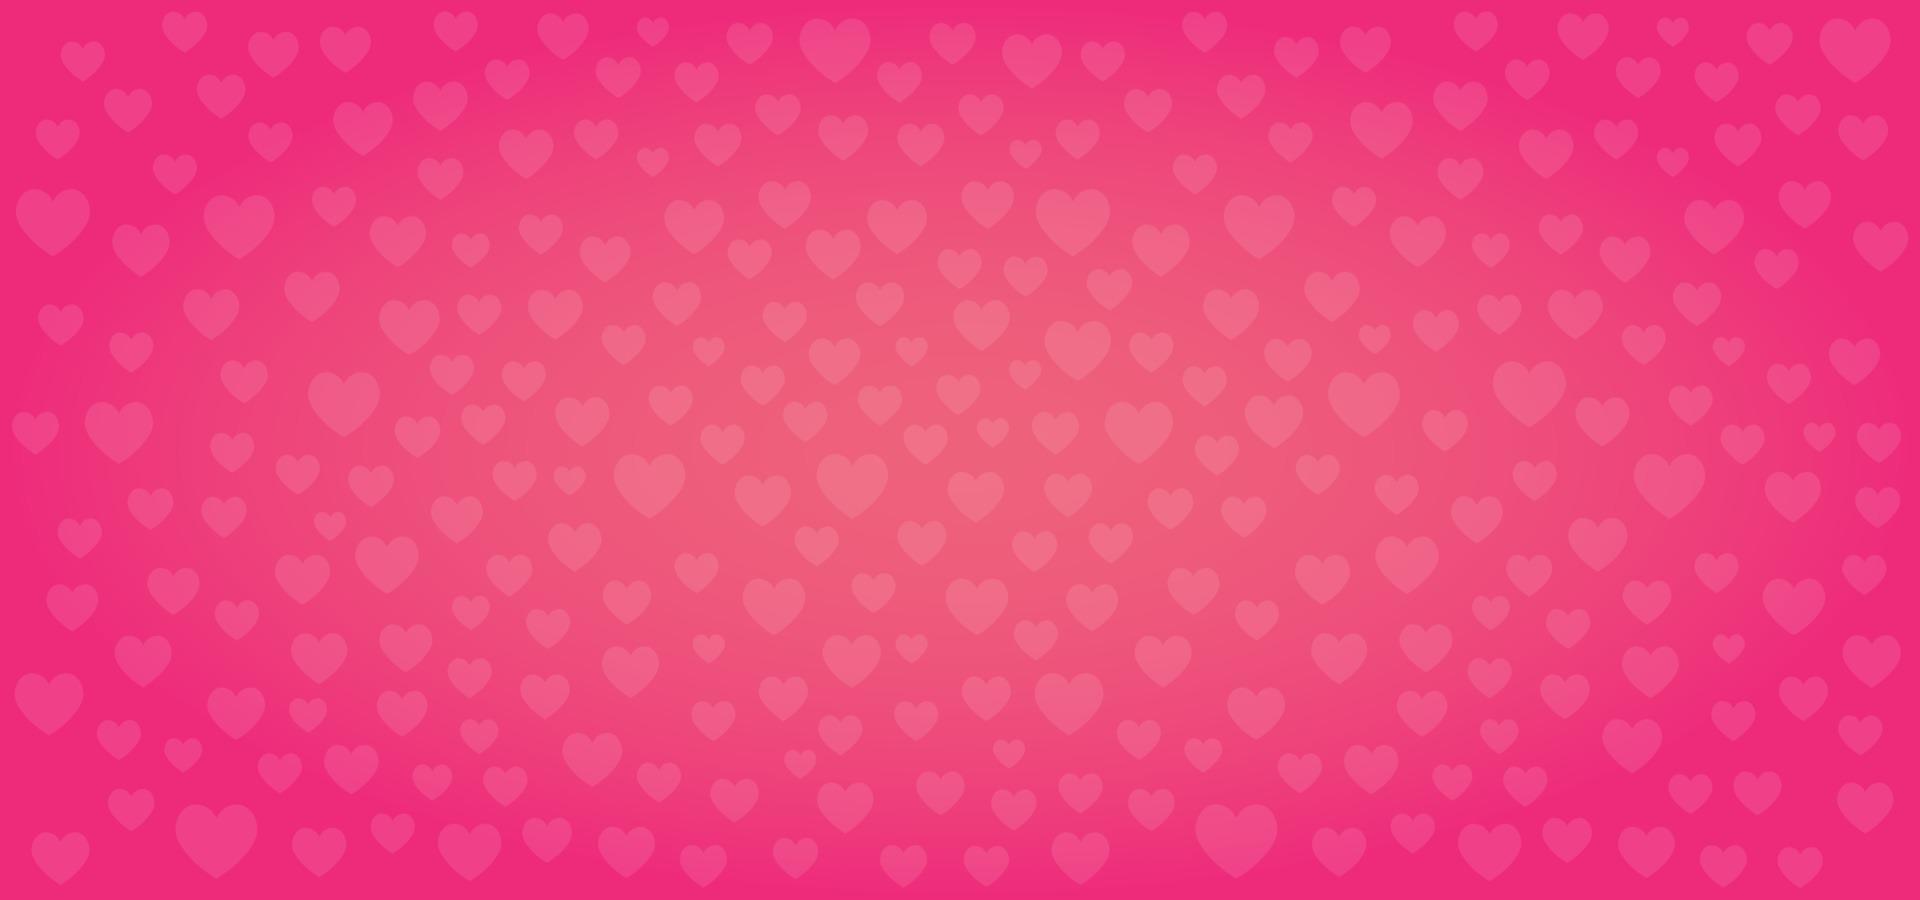 schoonheid hart textuur valentijn achtergrond vector